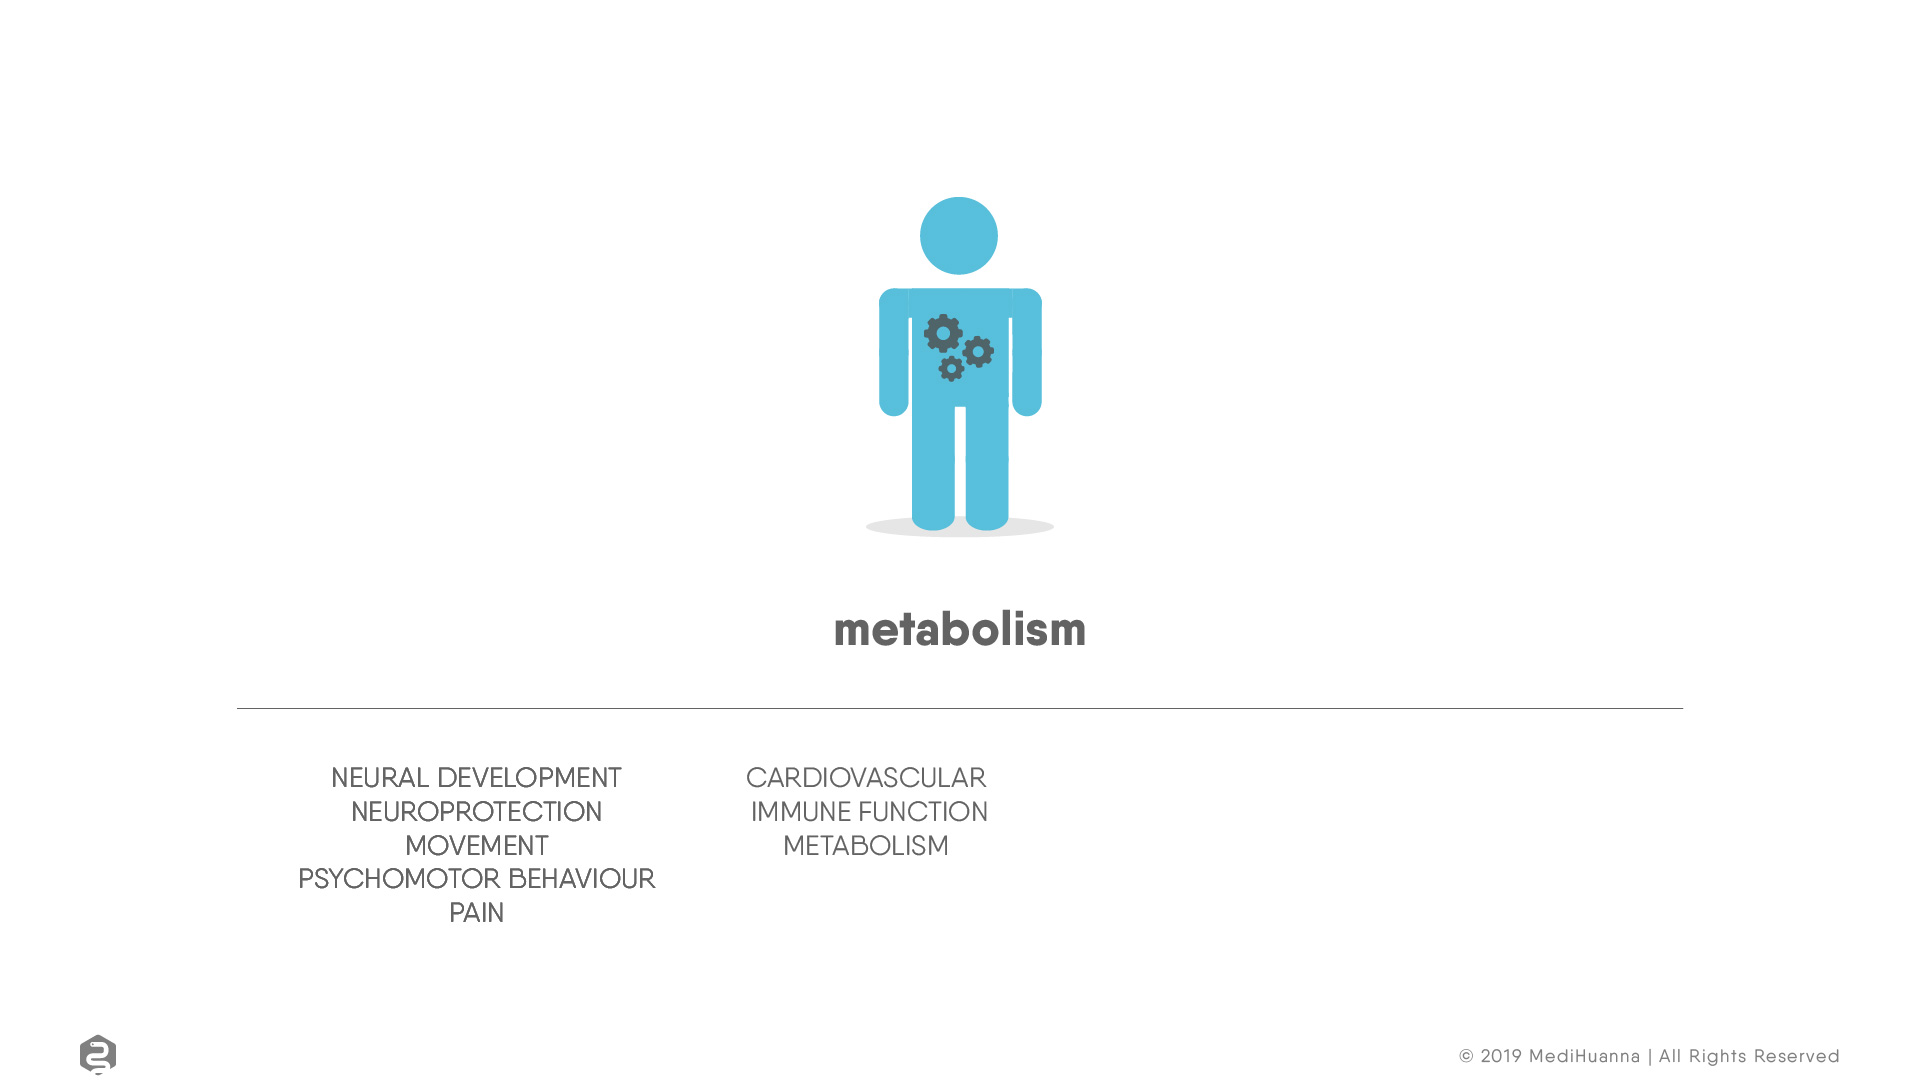 Neural development, Metabolism